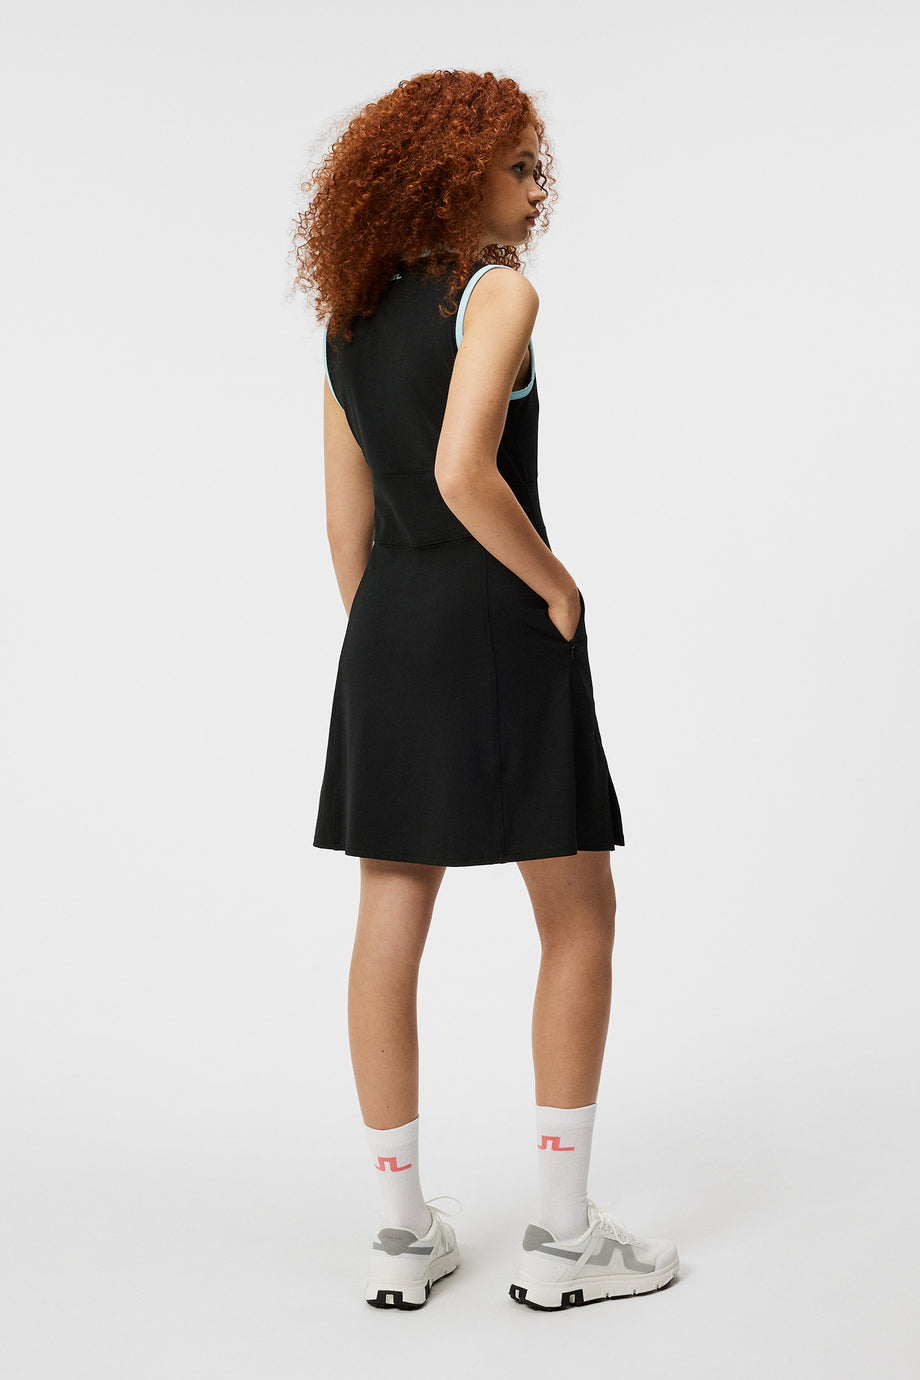 Ebony Dress / Black